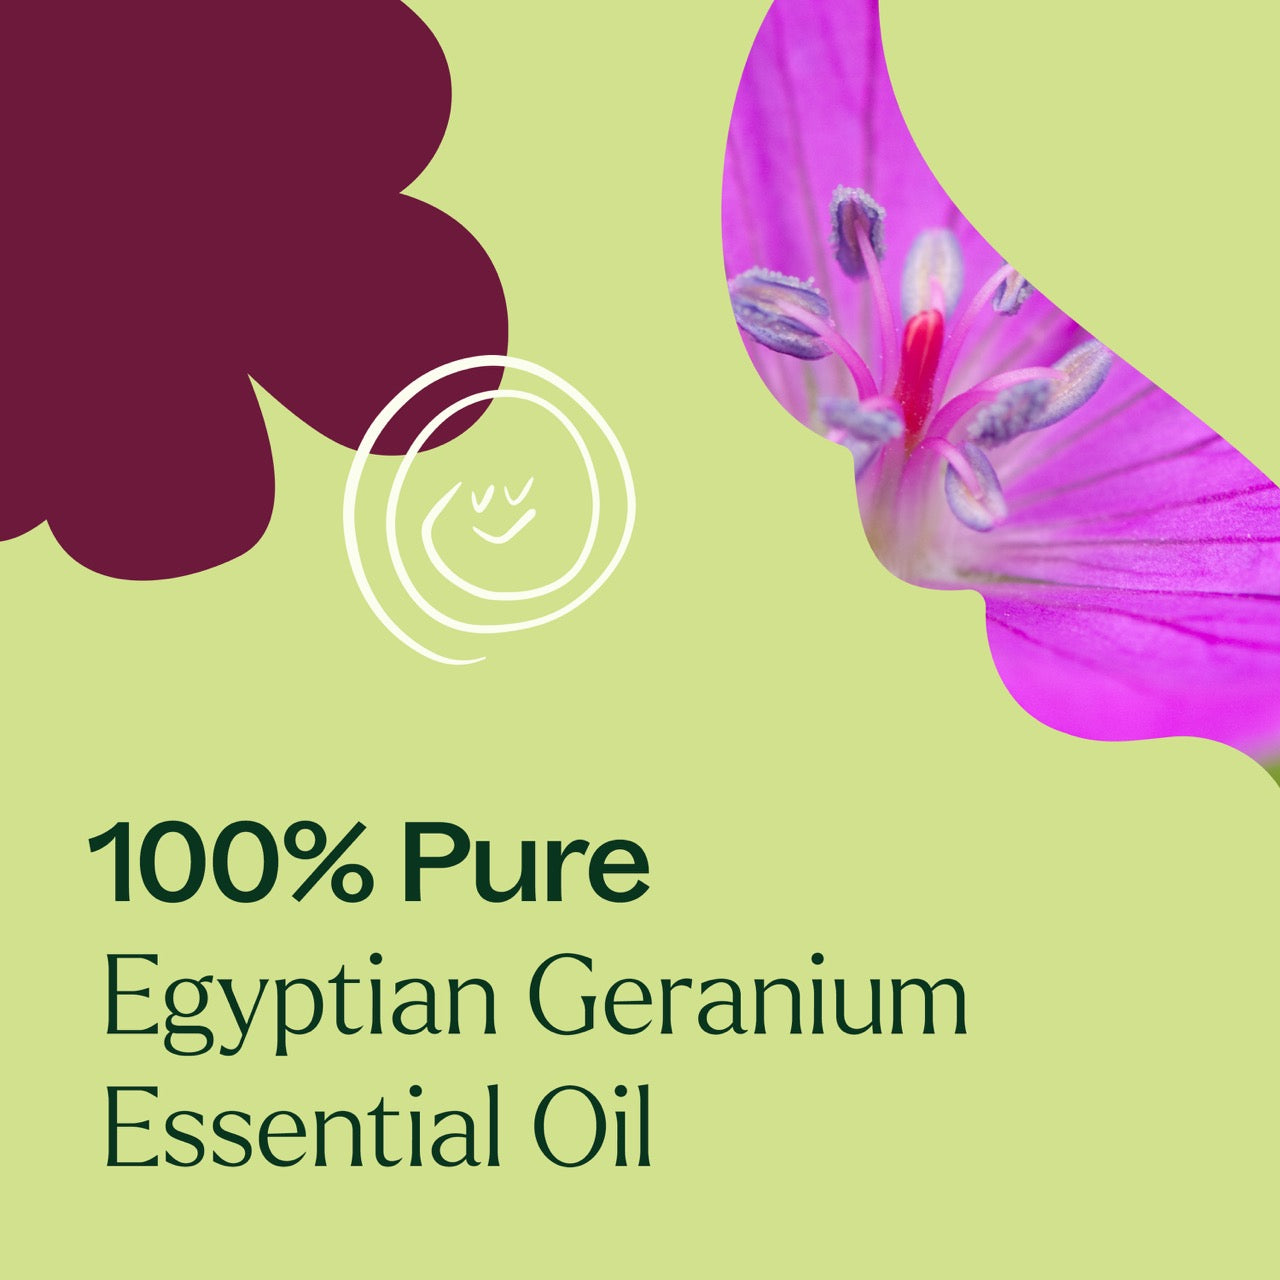 100% pure Egyptian Geranium Essential Oil